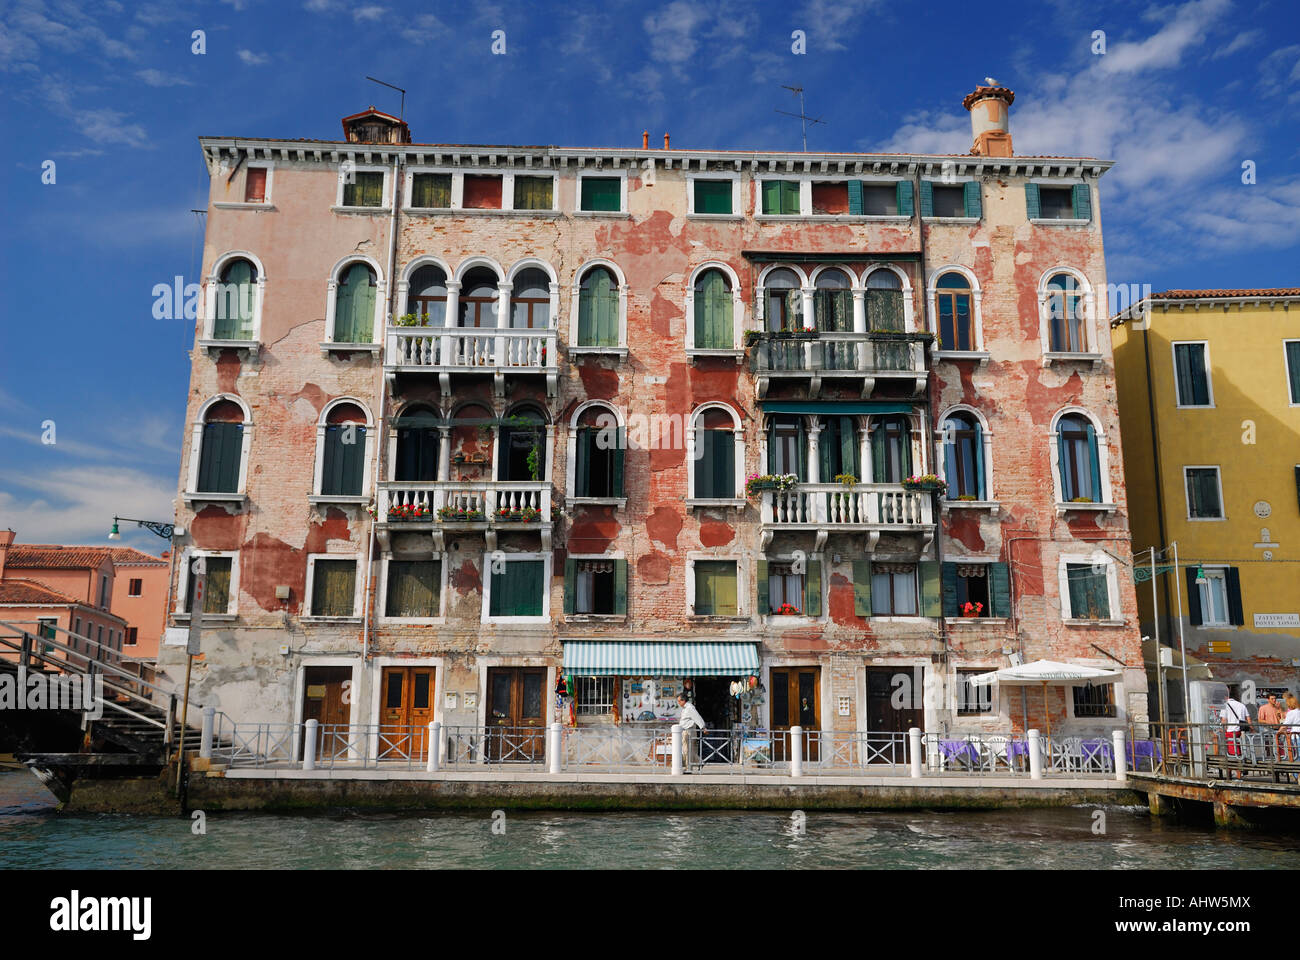 Schälen rote Stuck an einen venezianischen Hafen Gebäude am San Basilio Wasserbus stoppen Venedig Italien Stockfoto